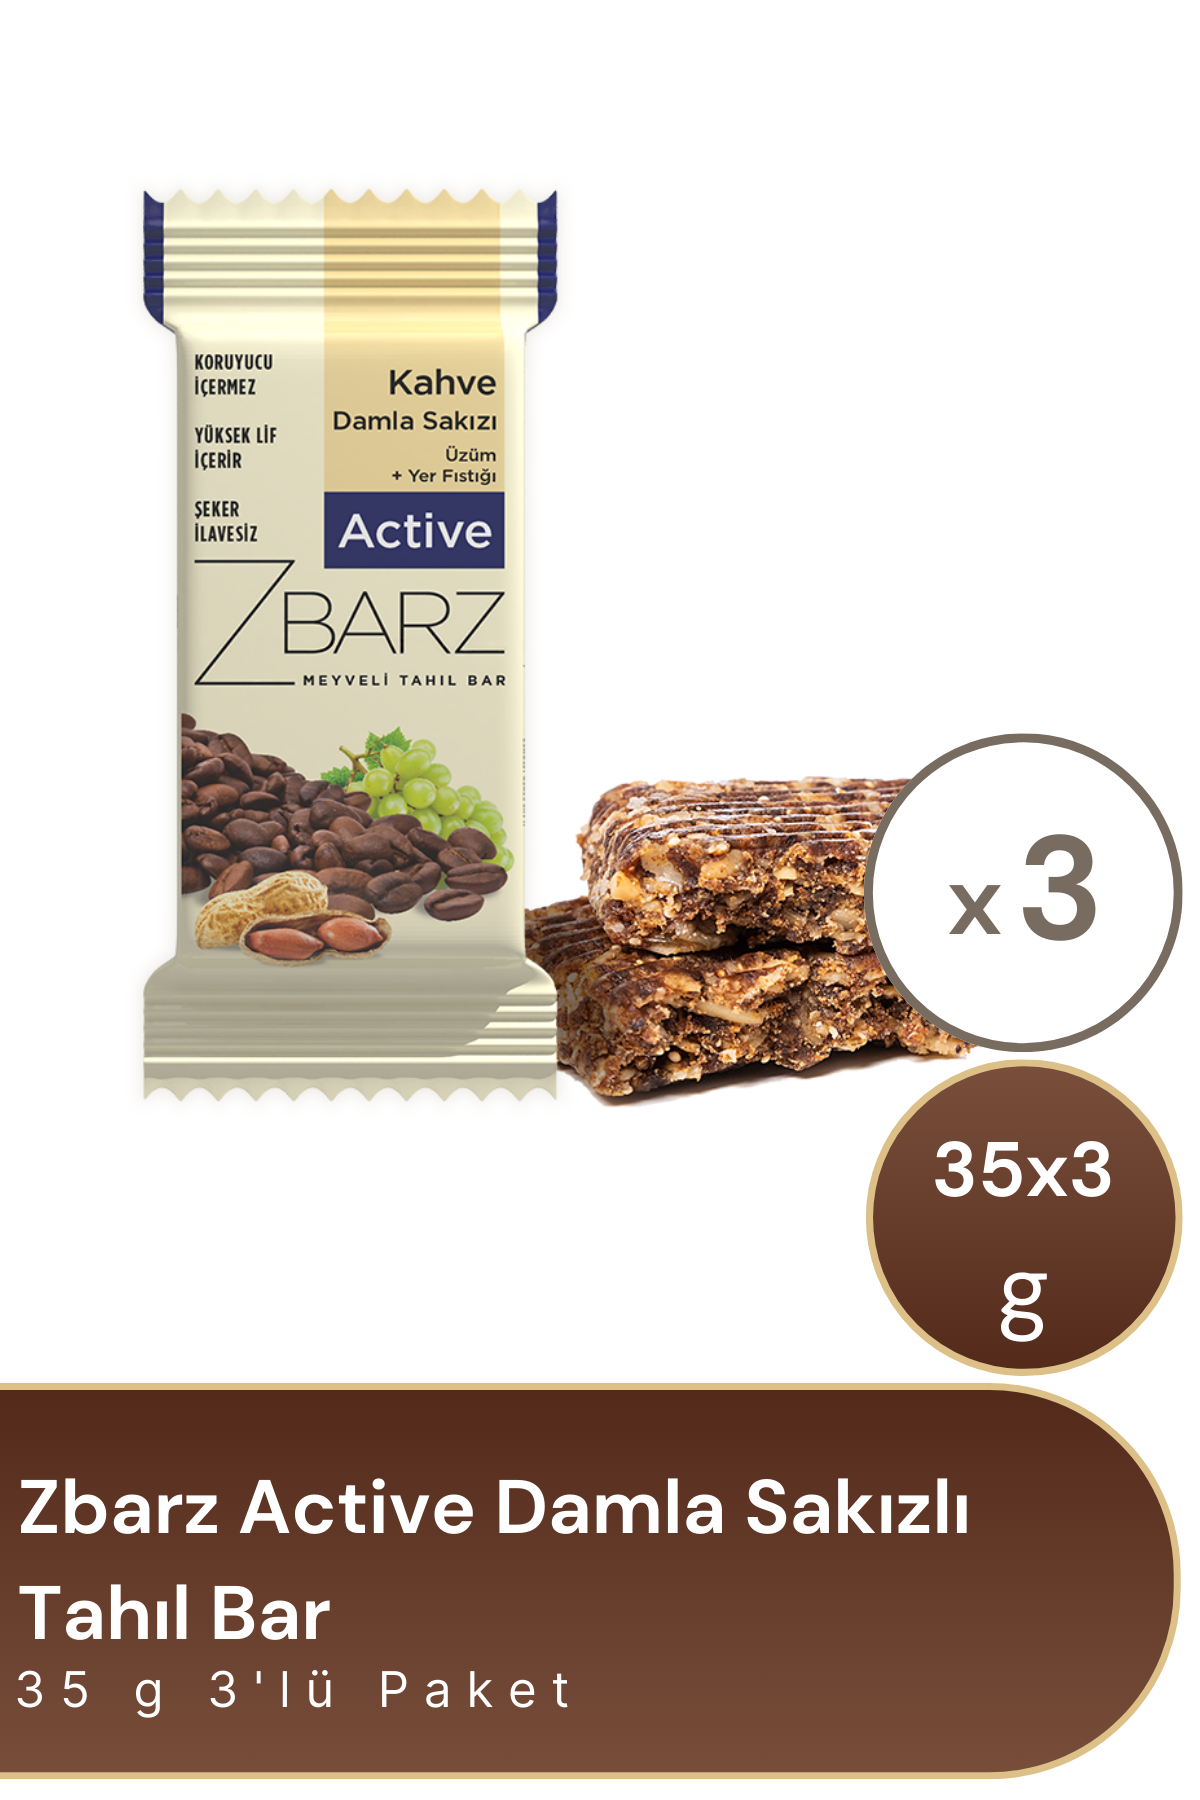 Zbarz Active Damla Sakızlı Tahıl Bar 35 g 3'lü Paket